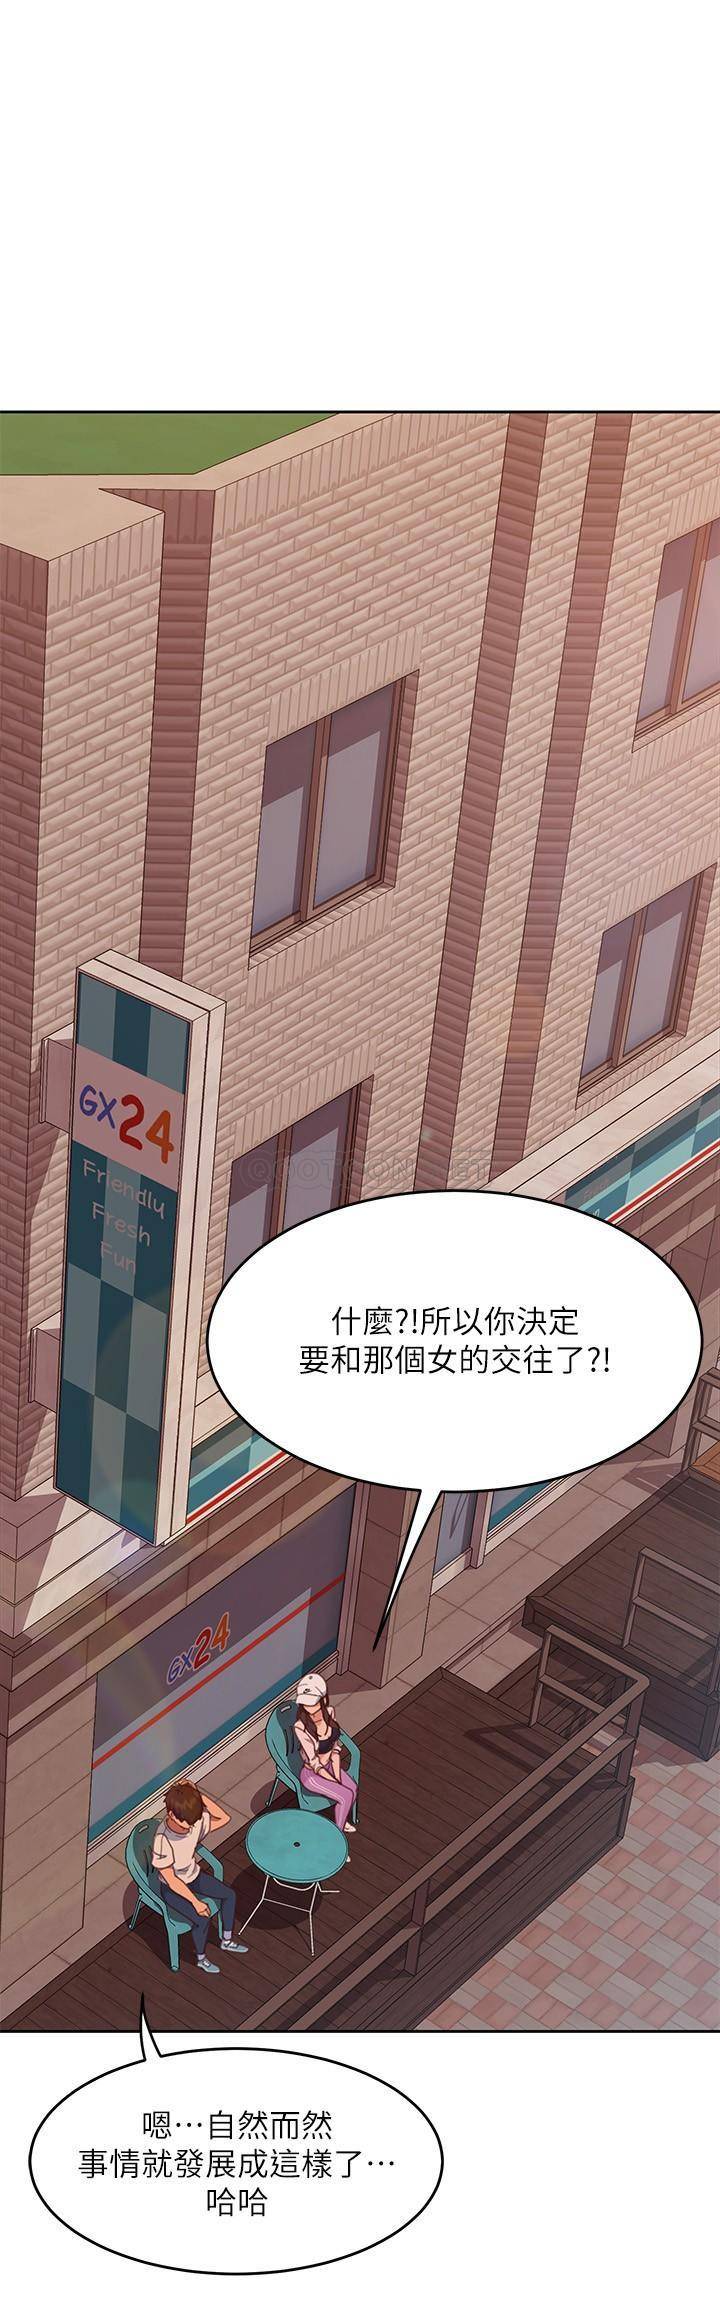 韩国污漫画 不良女房客 第14话-等待房东的惠美 28